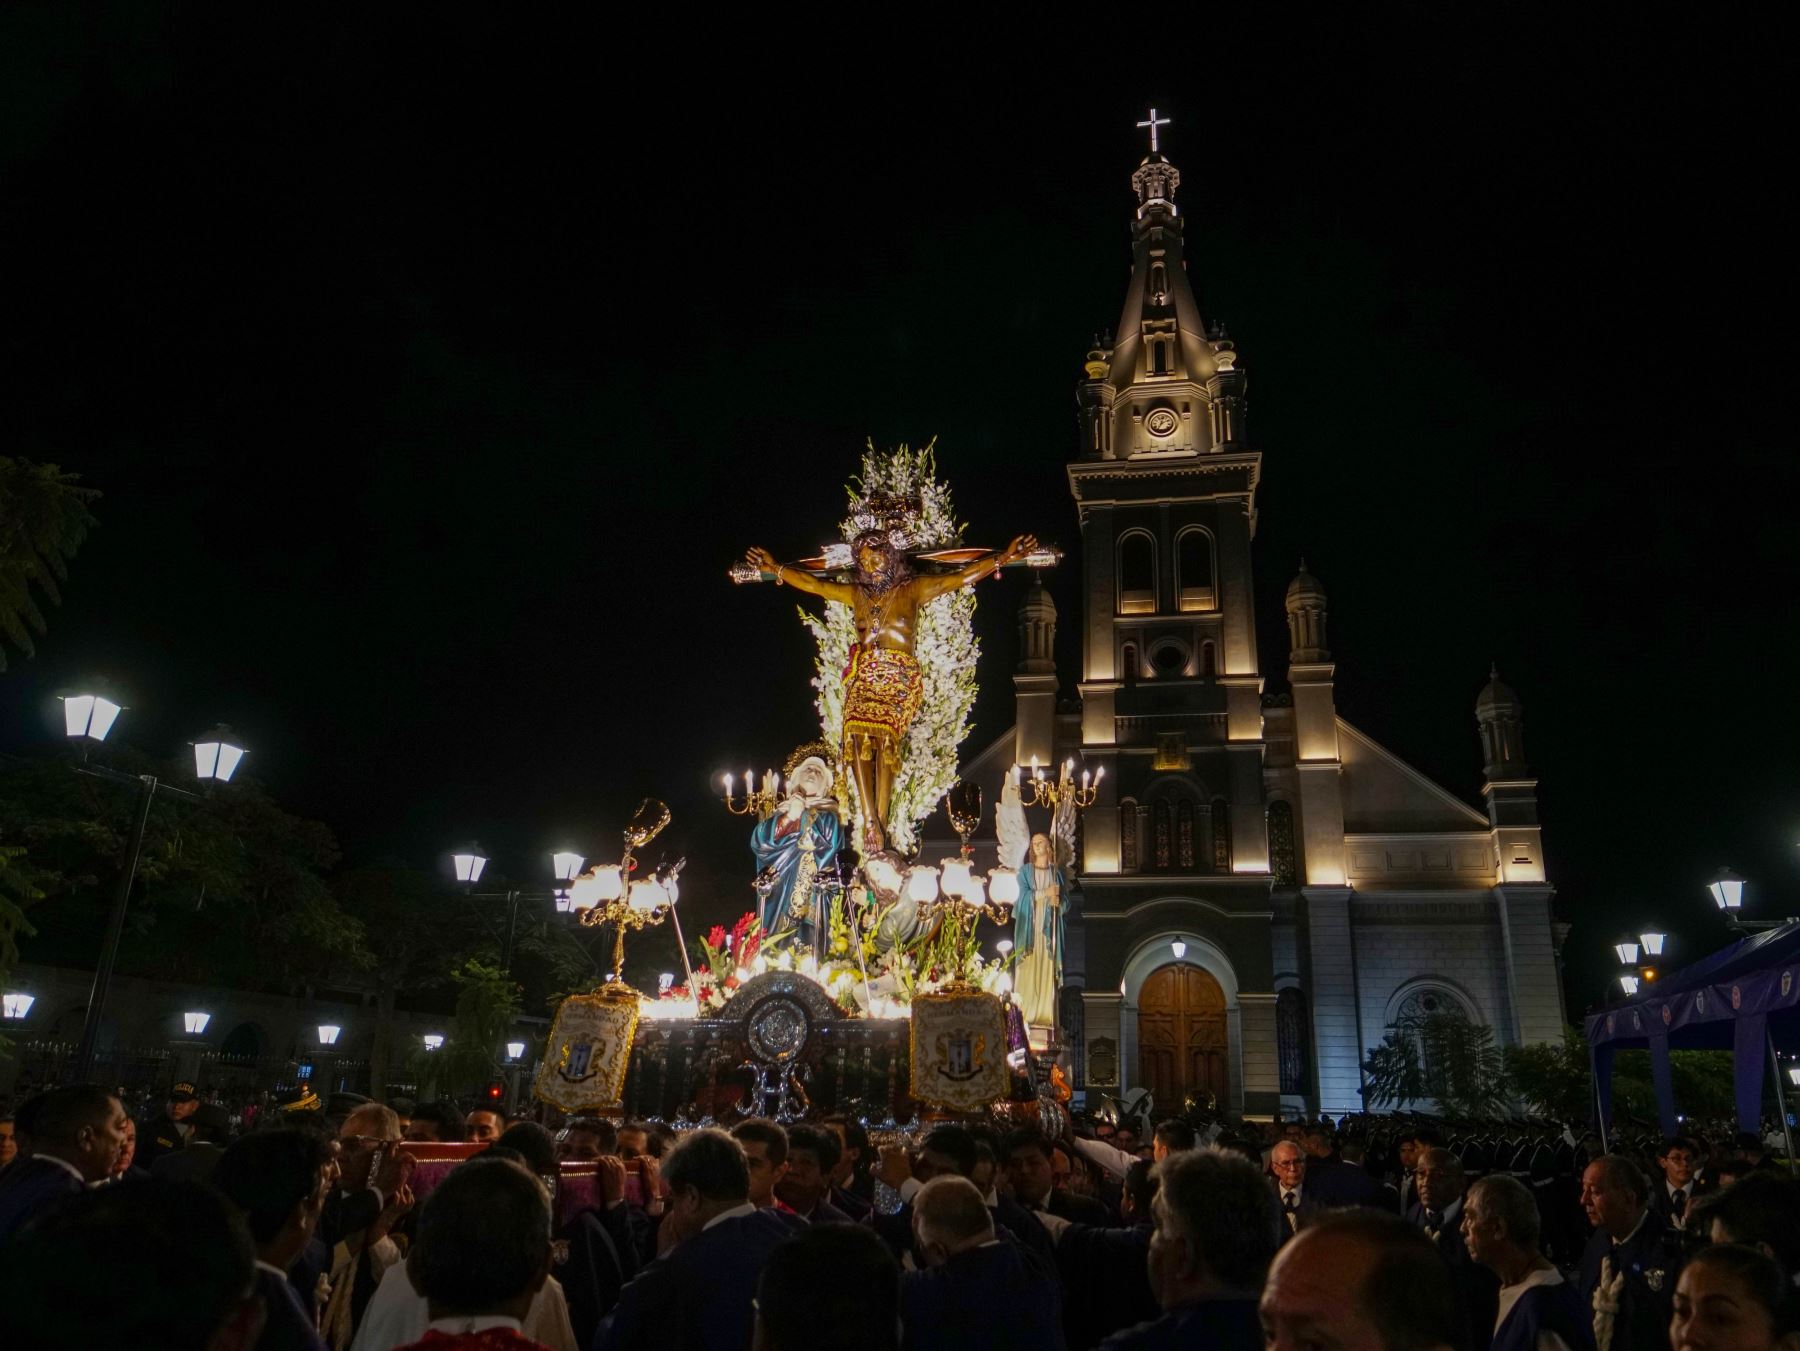 La procesión del Señor de Luren, patrono de Ica, es una de las actividades centrales de Semana Santa en la ciudad de Ica. Foto: Genry Bautista